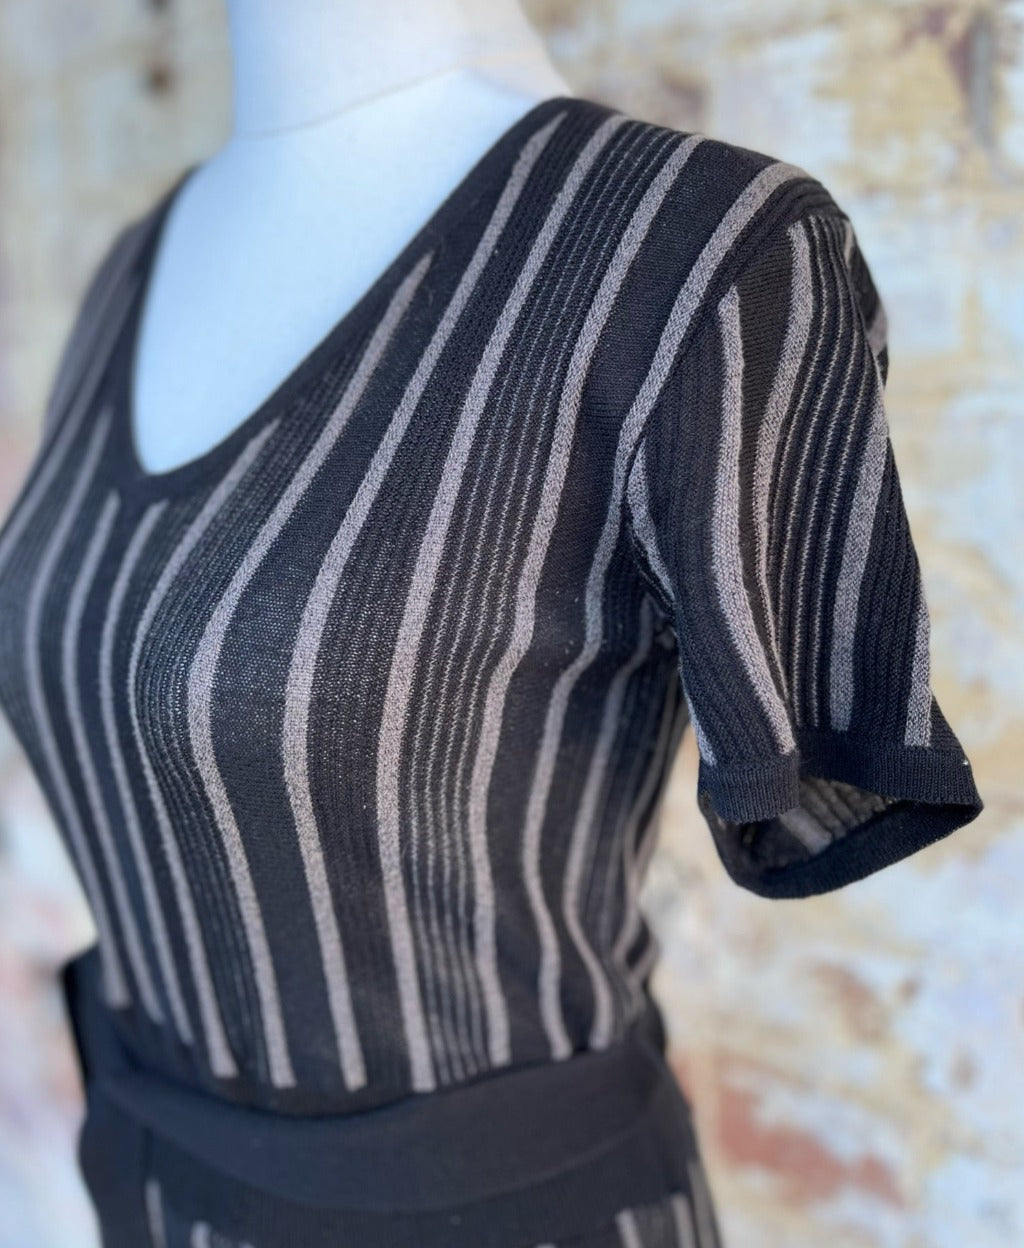 H&M Black Striped Knit Dress (Size M)